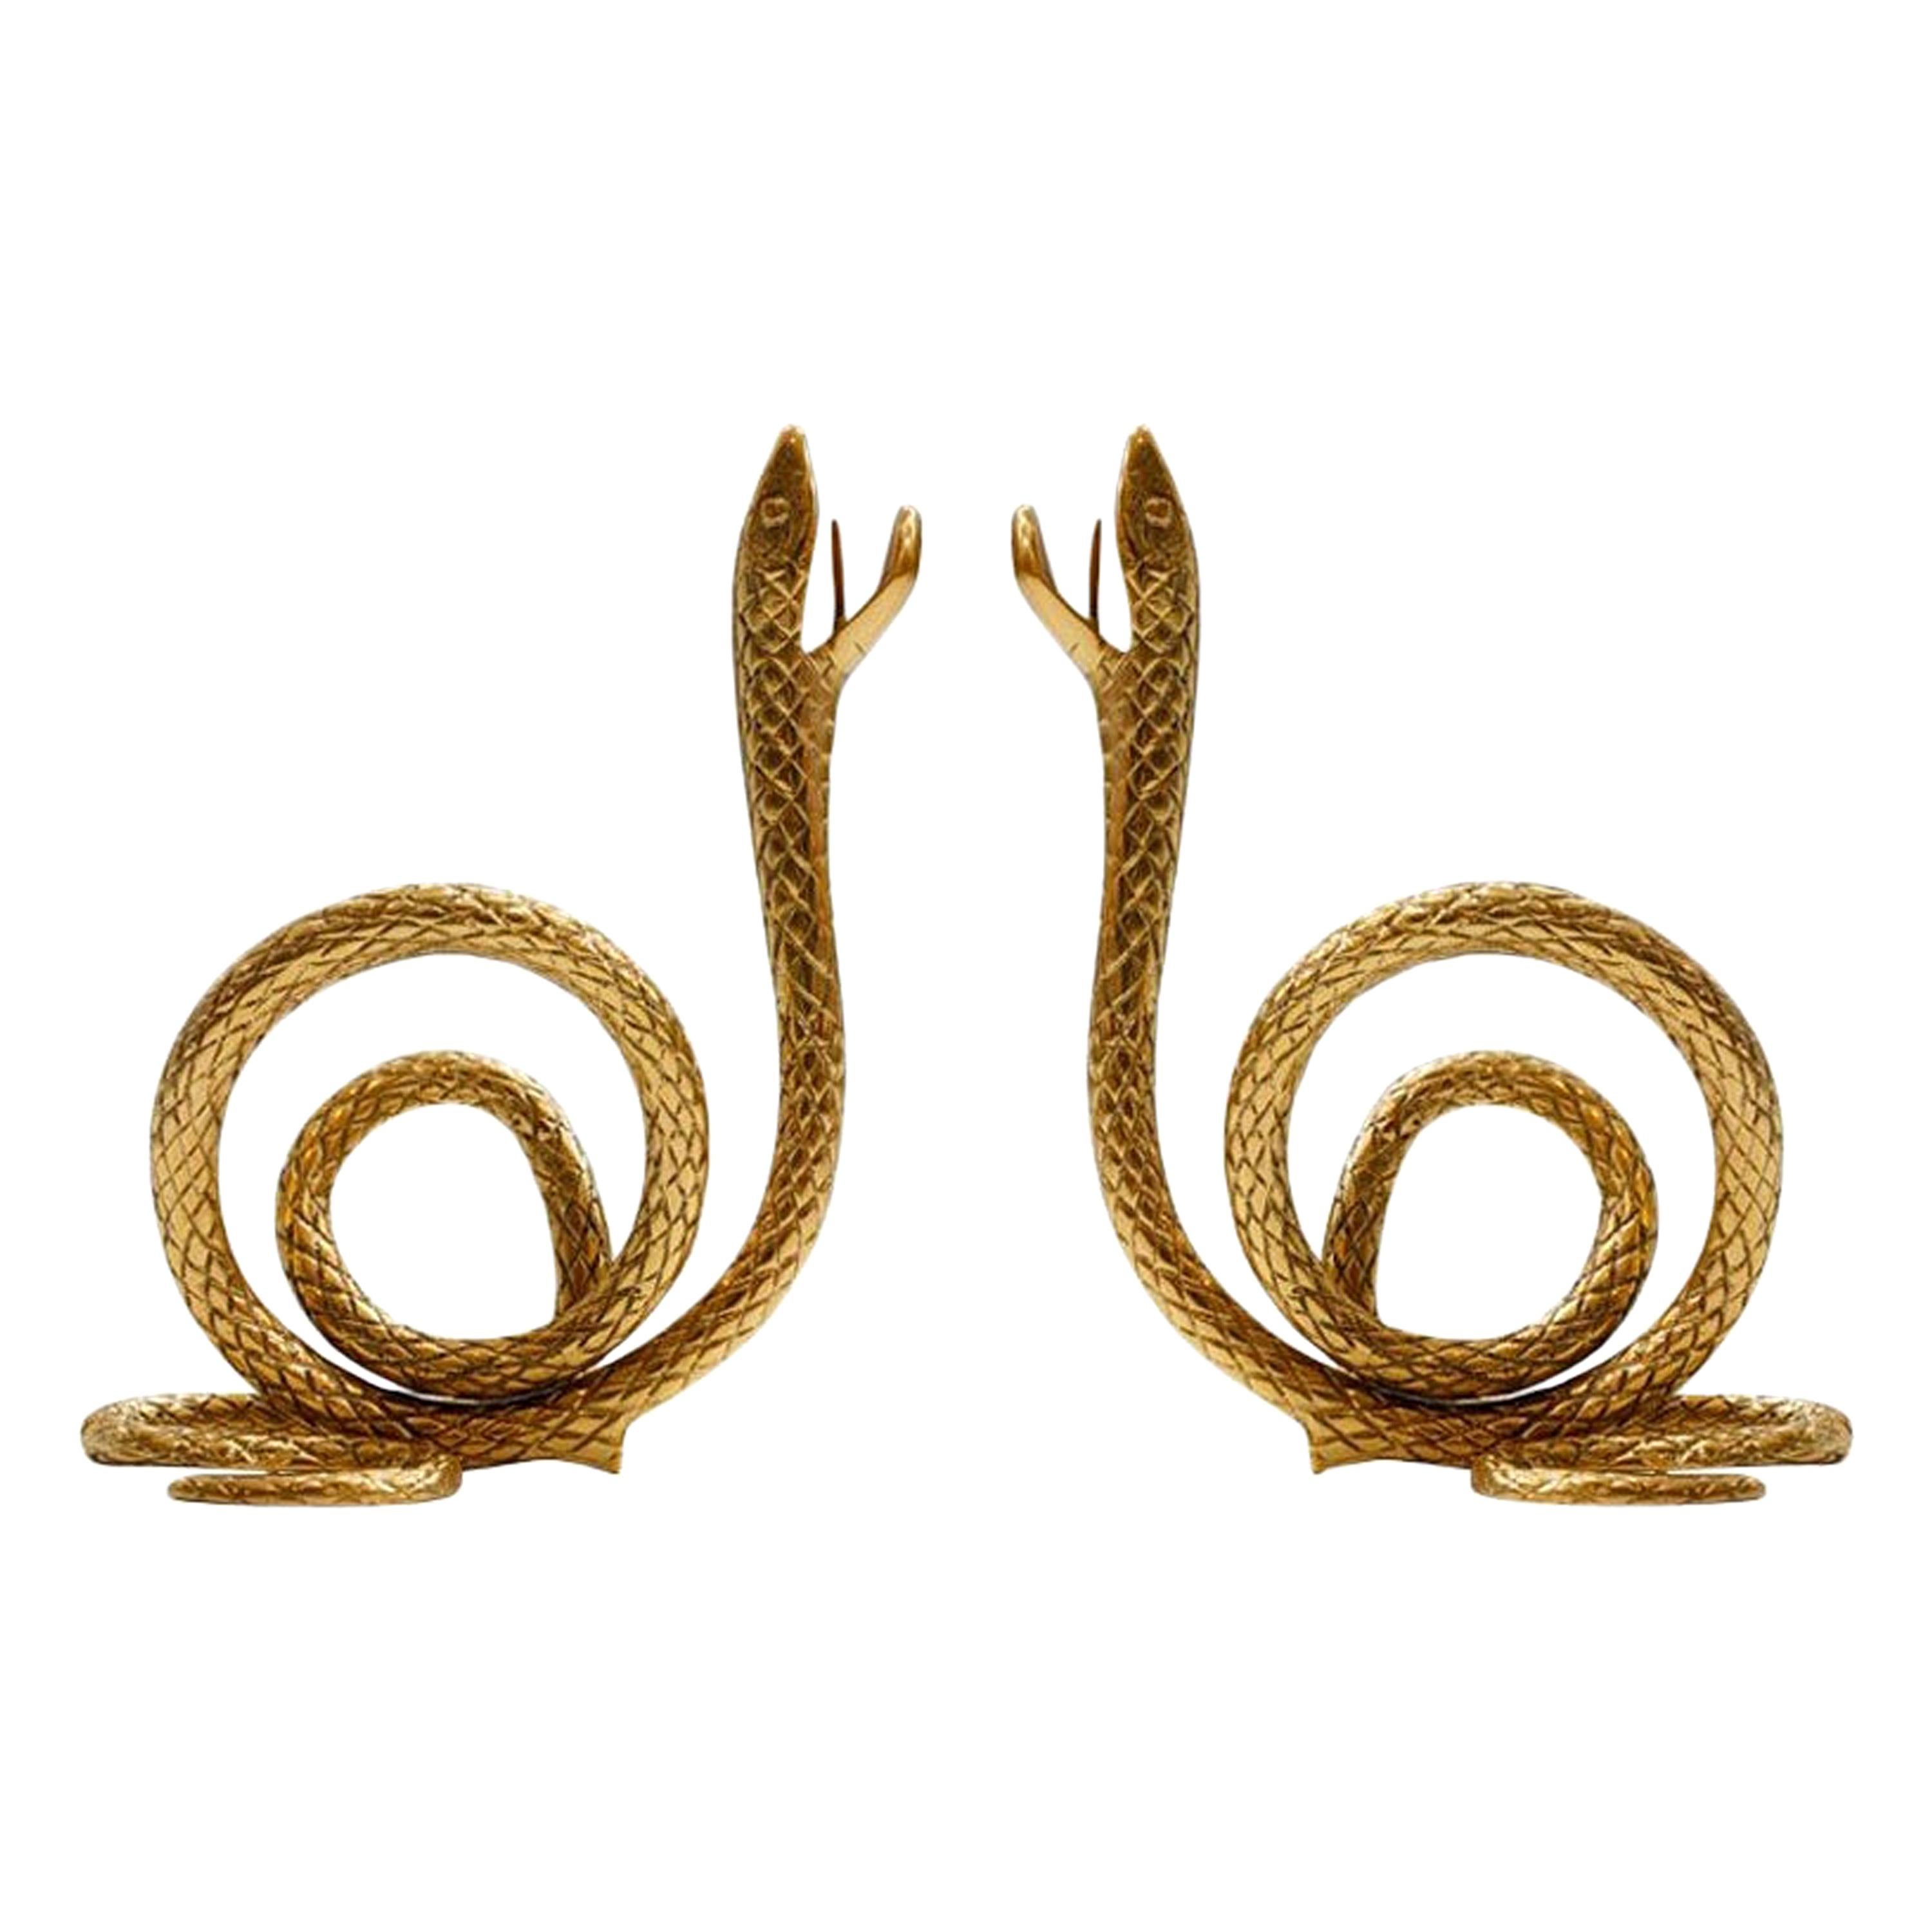 Midcentury Style Bronze Italian Pair of Candelabra